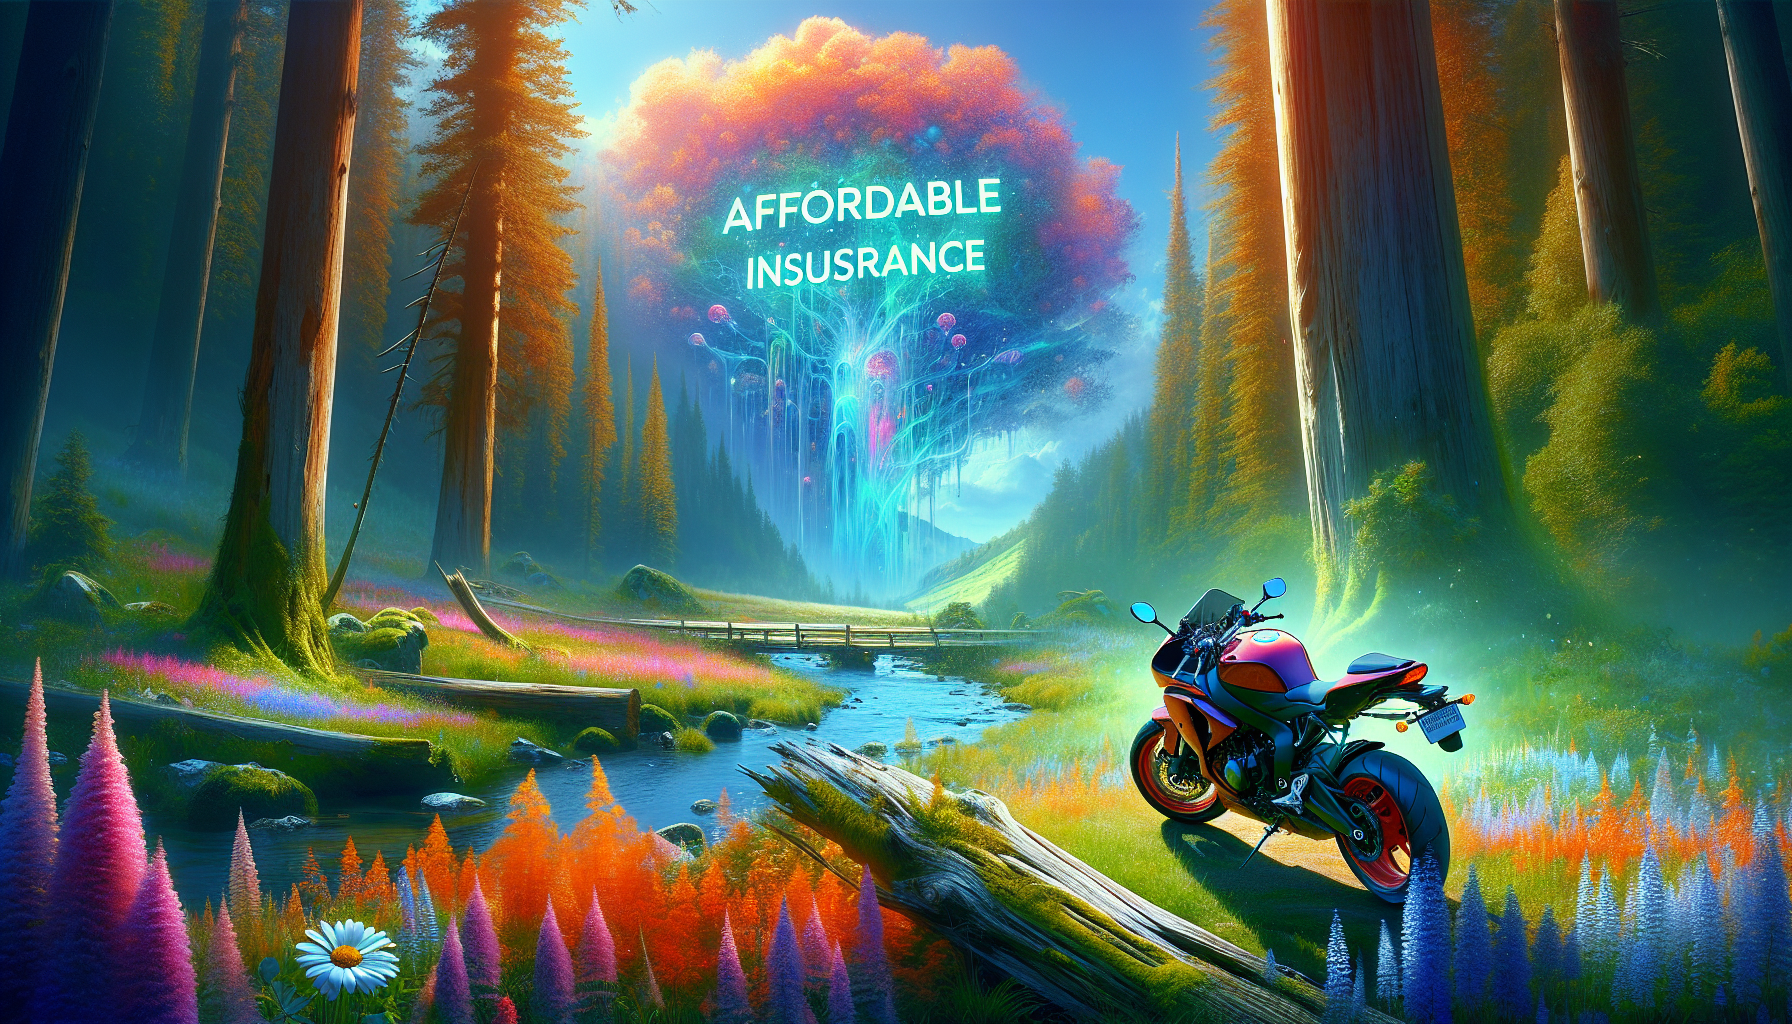 découvrez le coût de l'assurance pour une moto 600cc et trouvez la meilleure offre pour vous protéger sur la route.